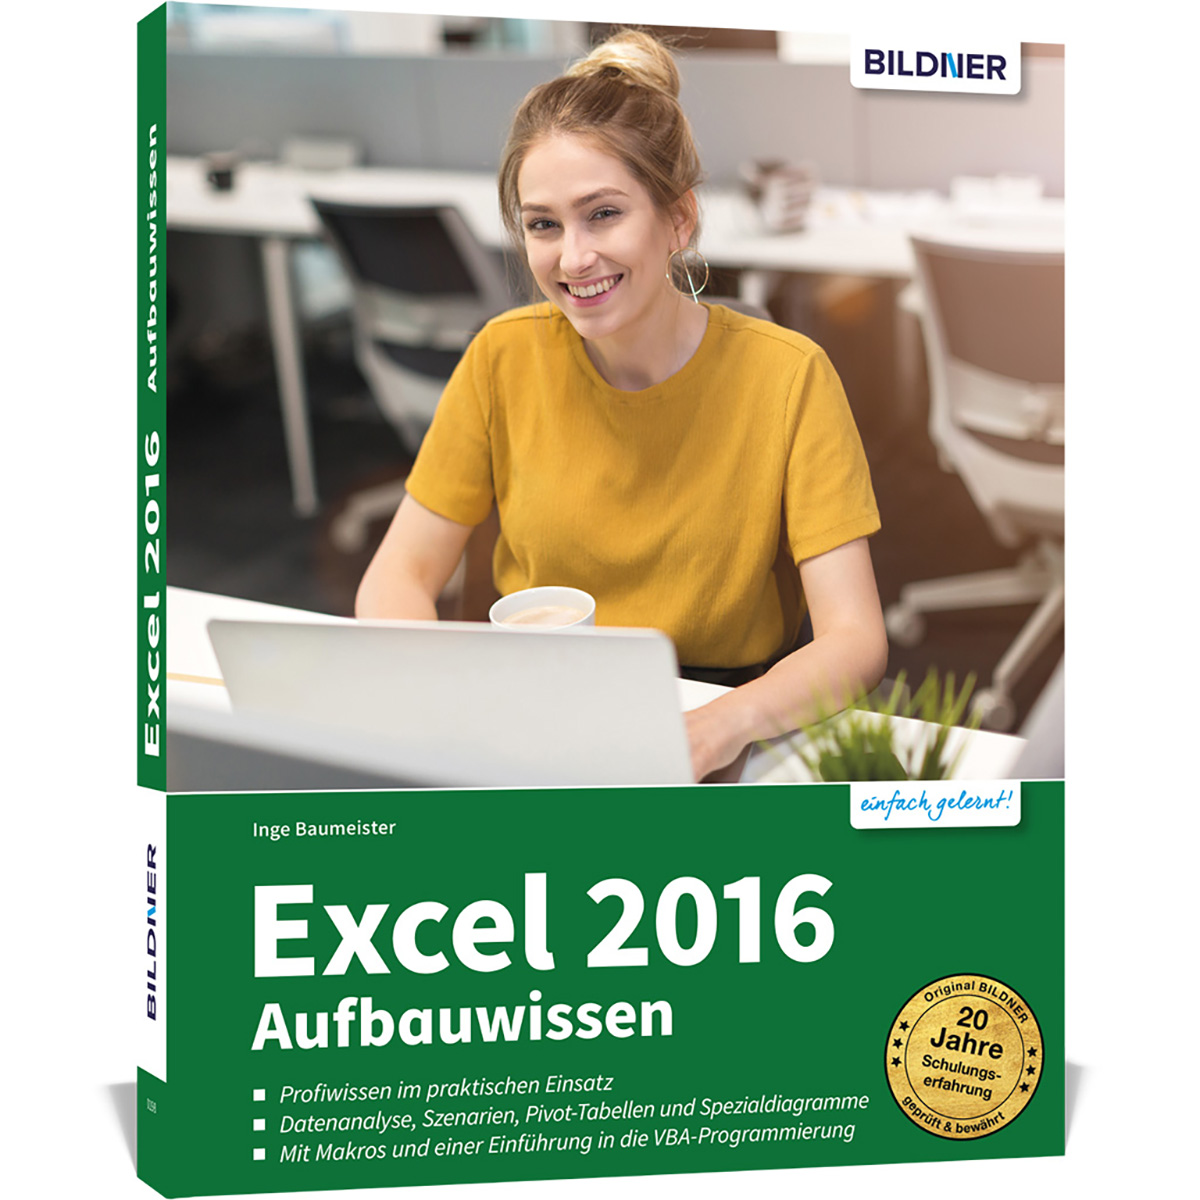 Excel 2016 Aufbauwissen - Profiwissen für Excel-Anwender